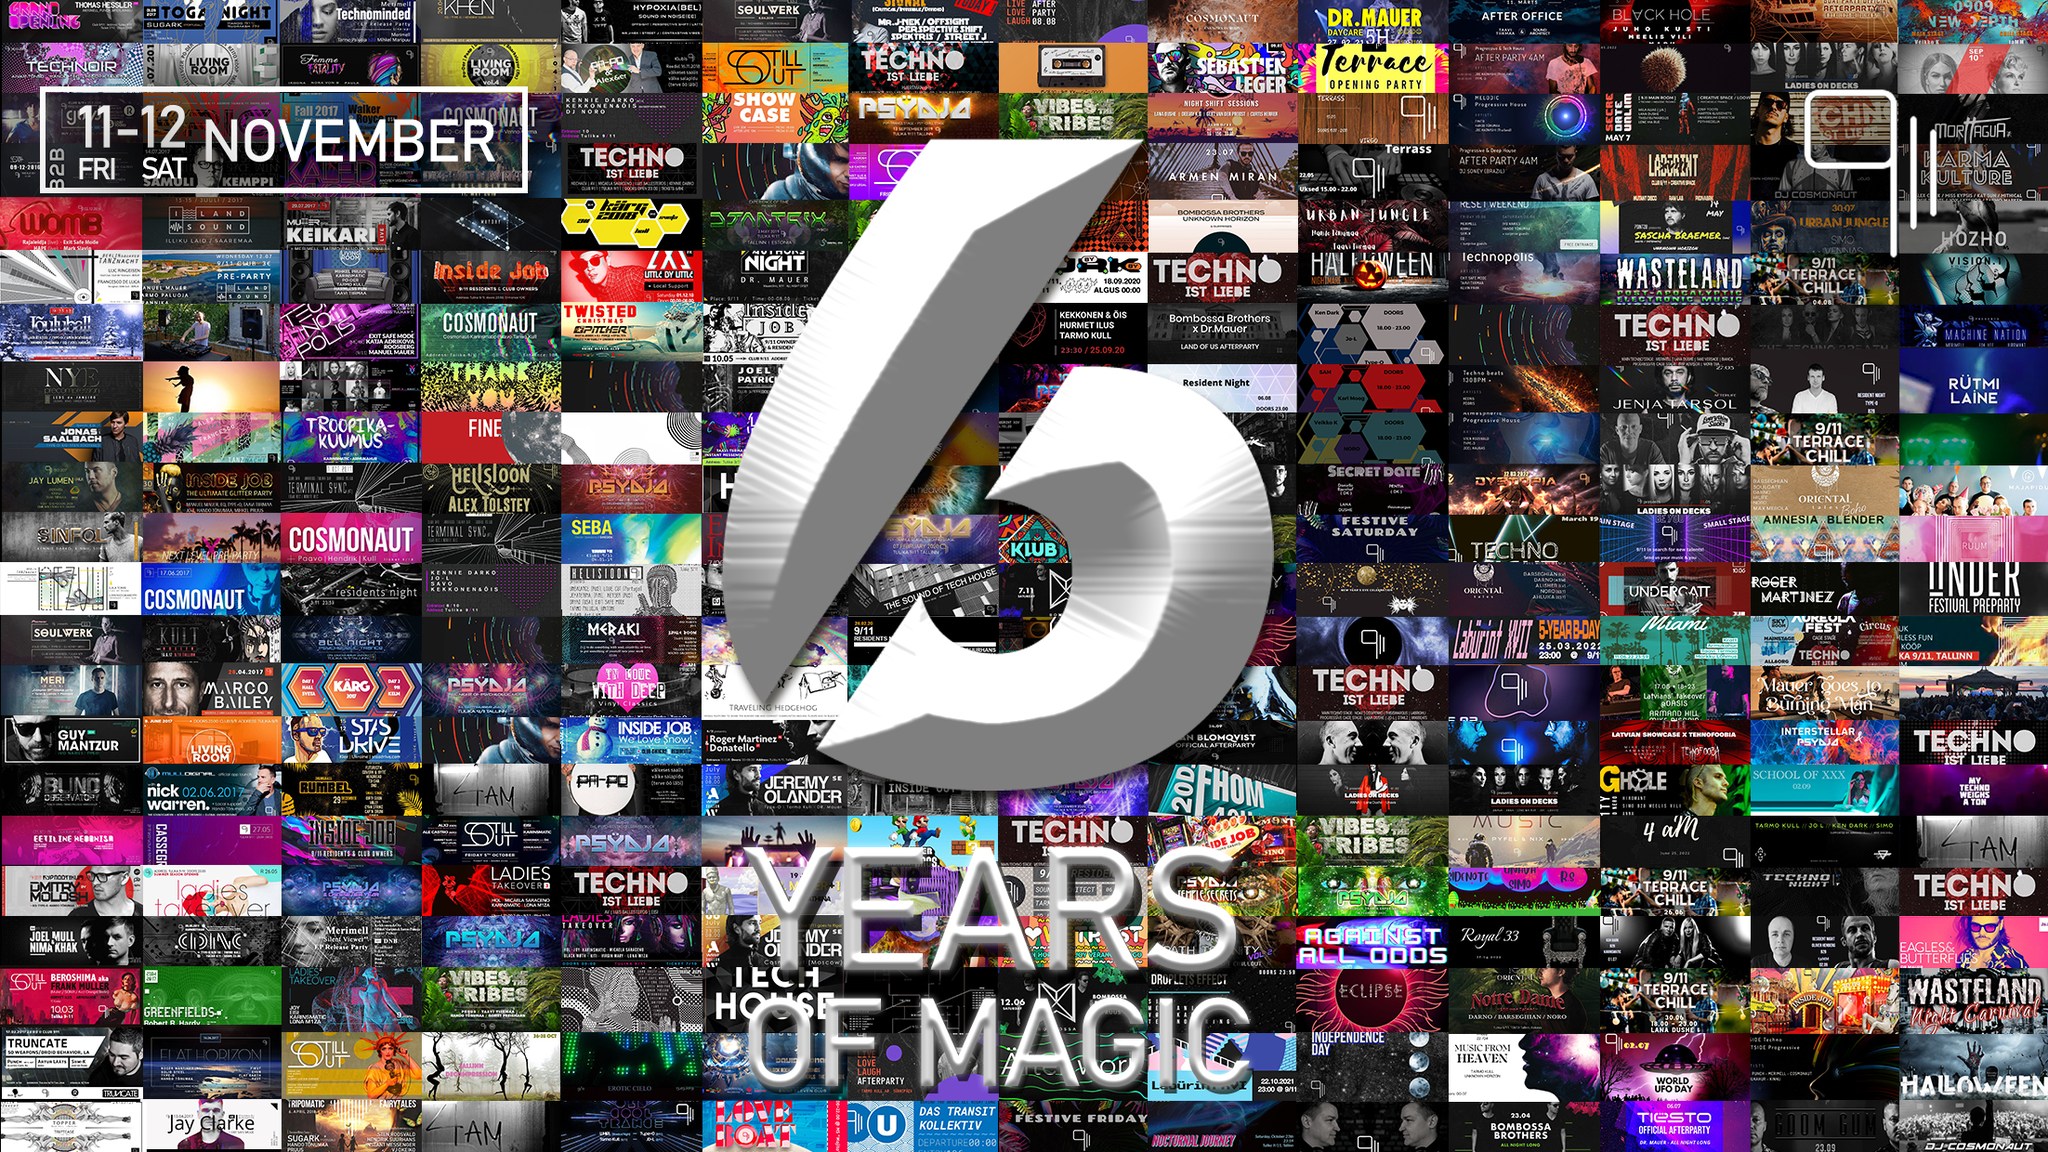 6 Years of Magic